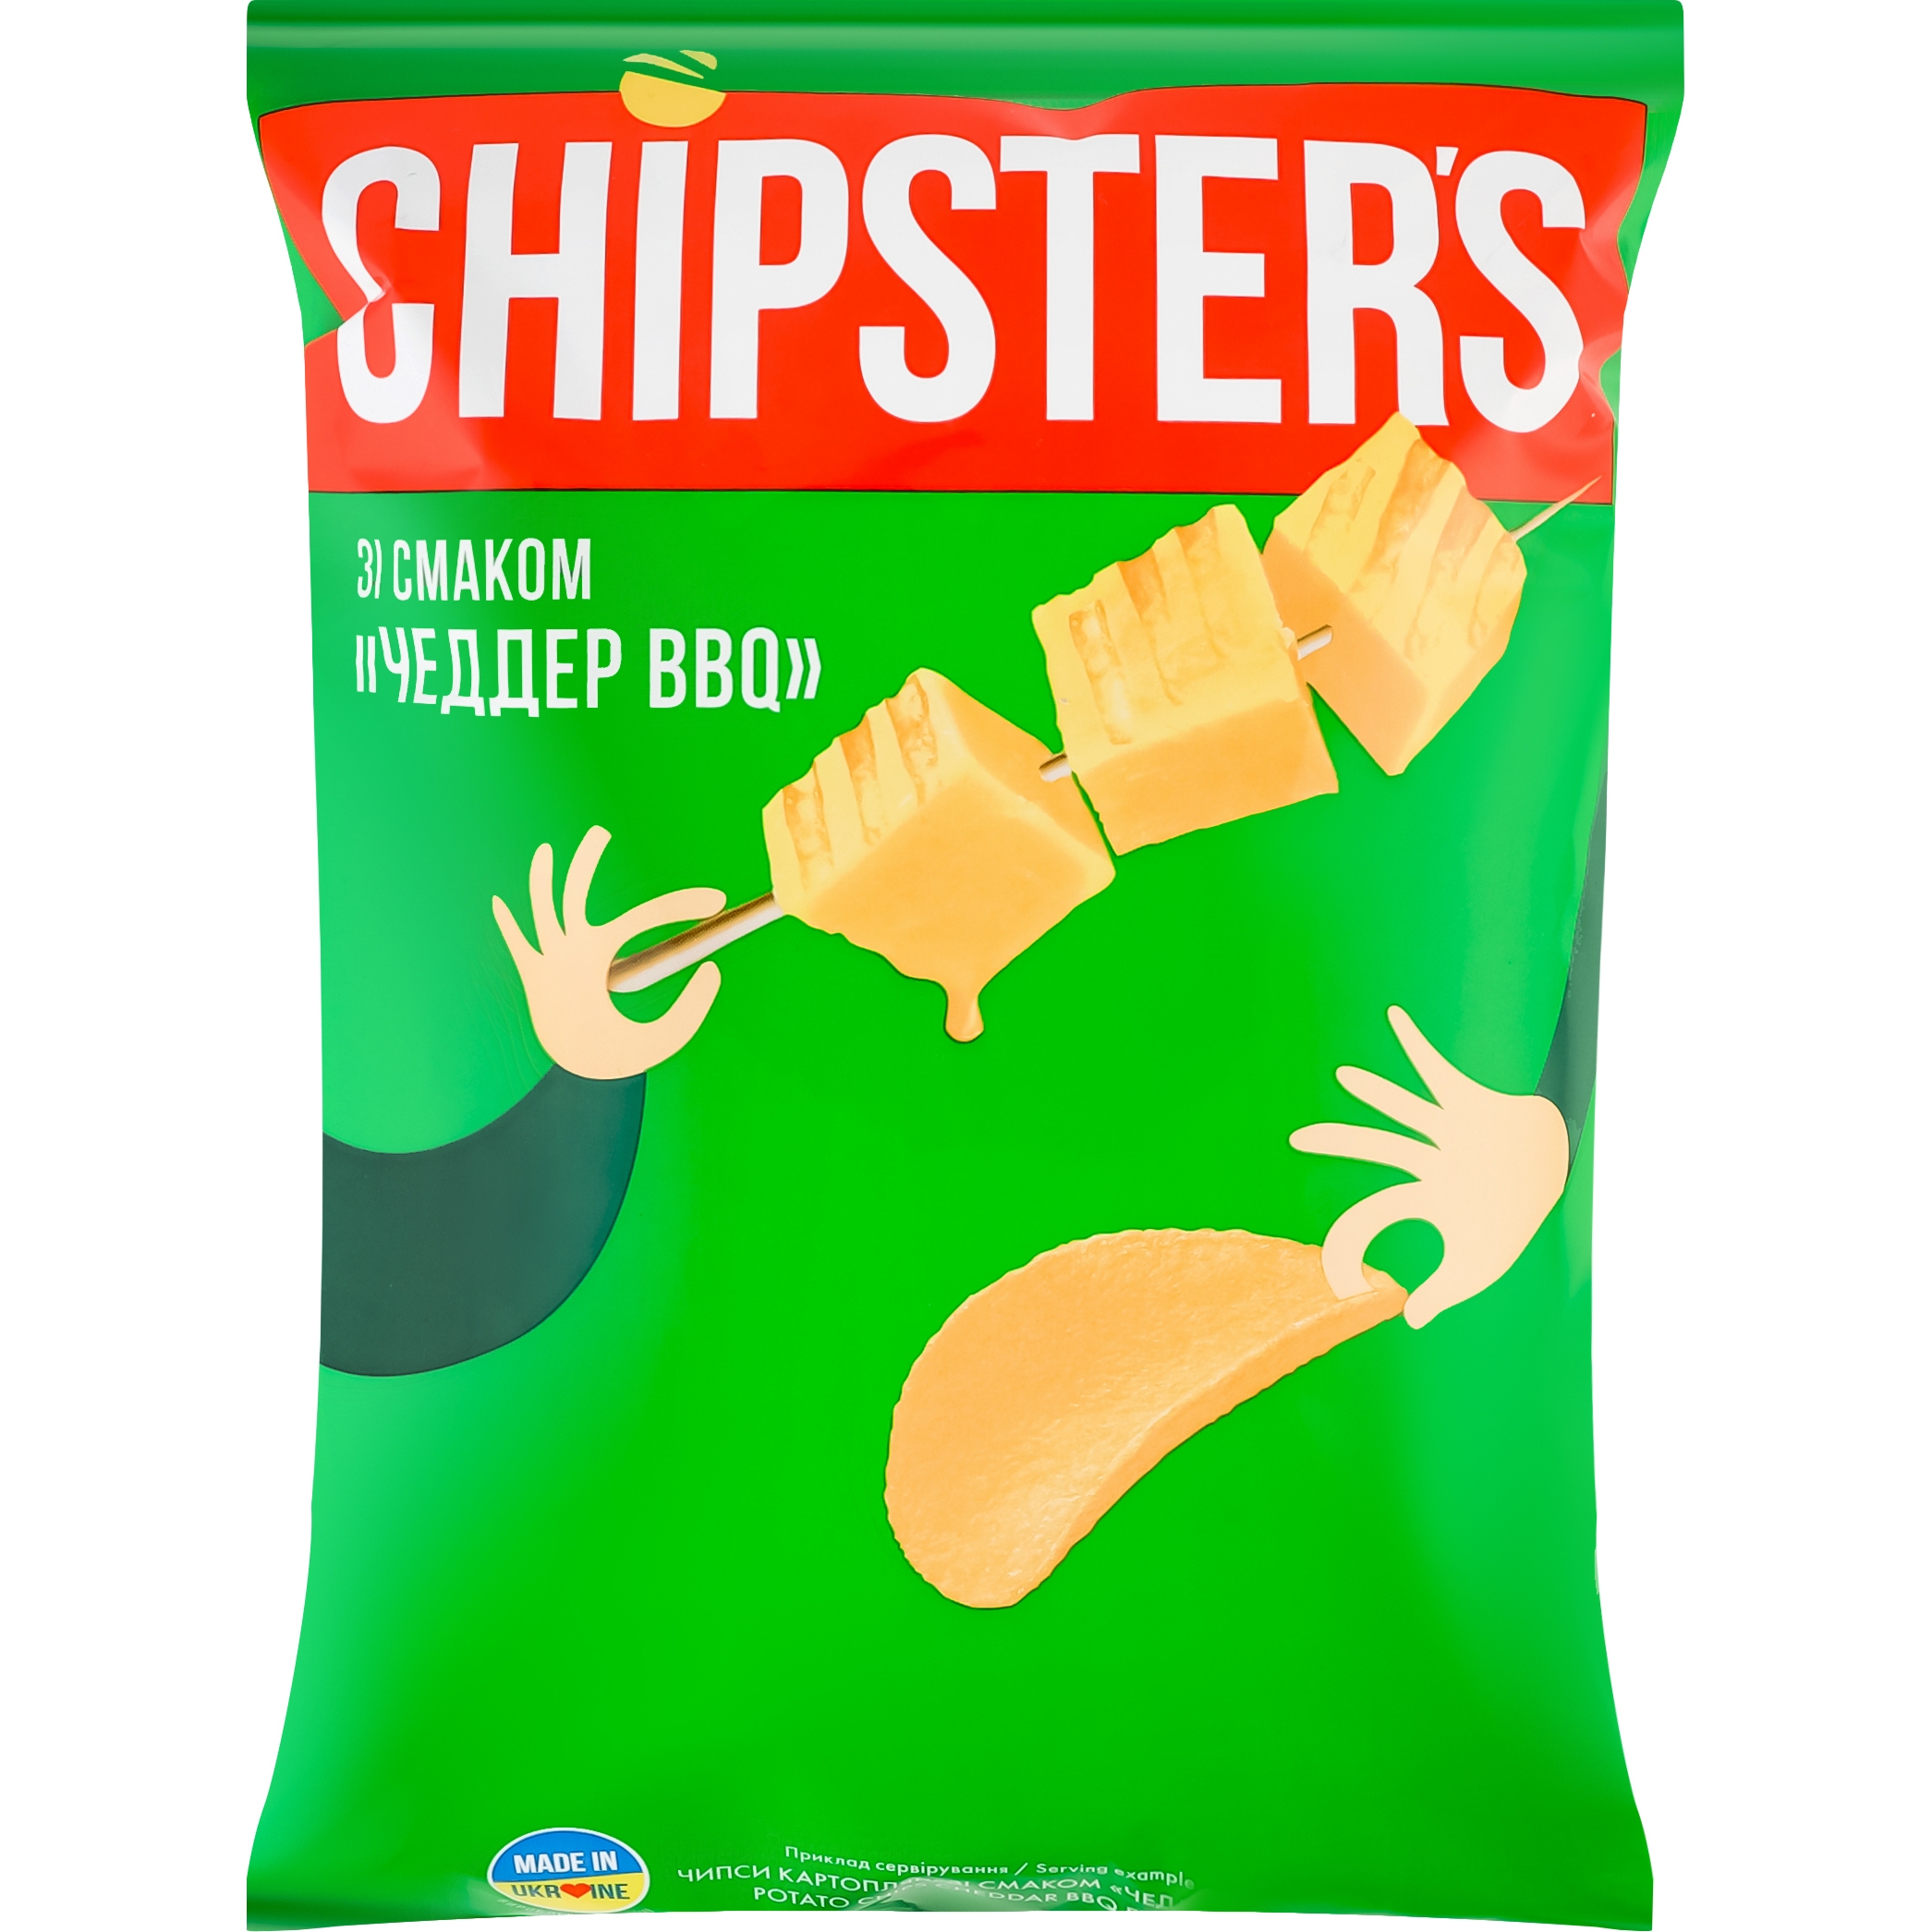 Чипсы картофельные Chipster's Чеддер BBQ 130 г - фото 1